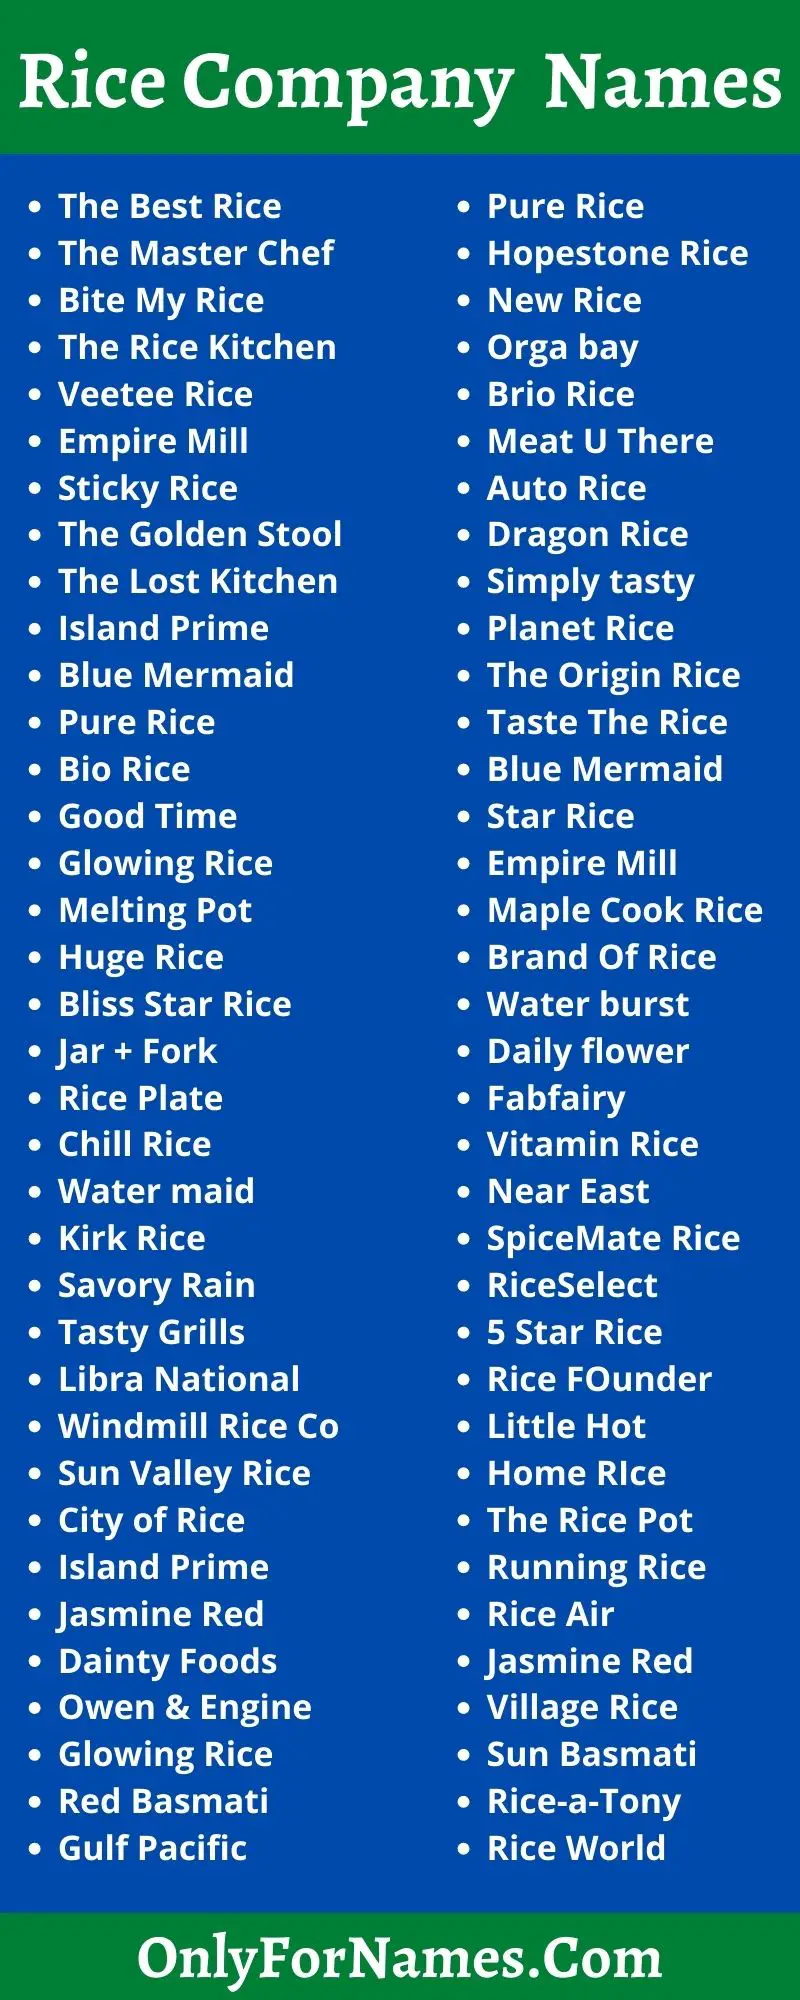 Rice Company Names